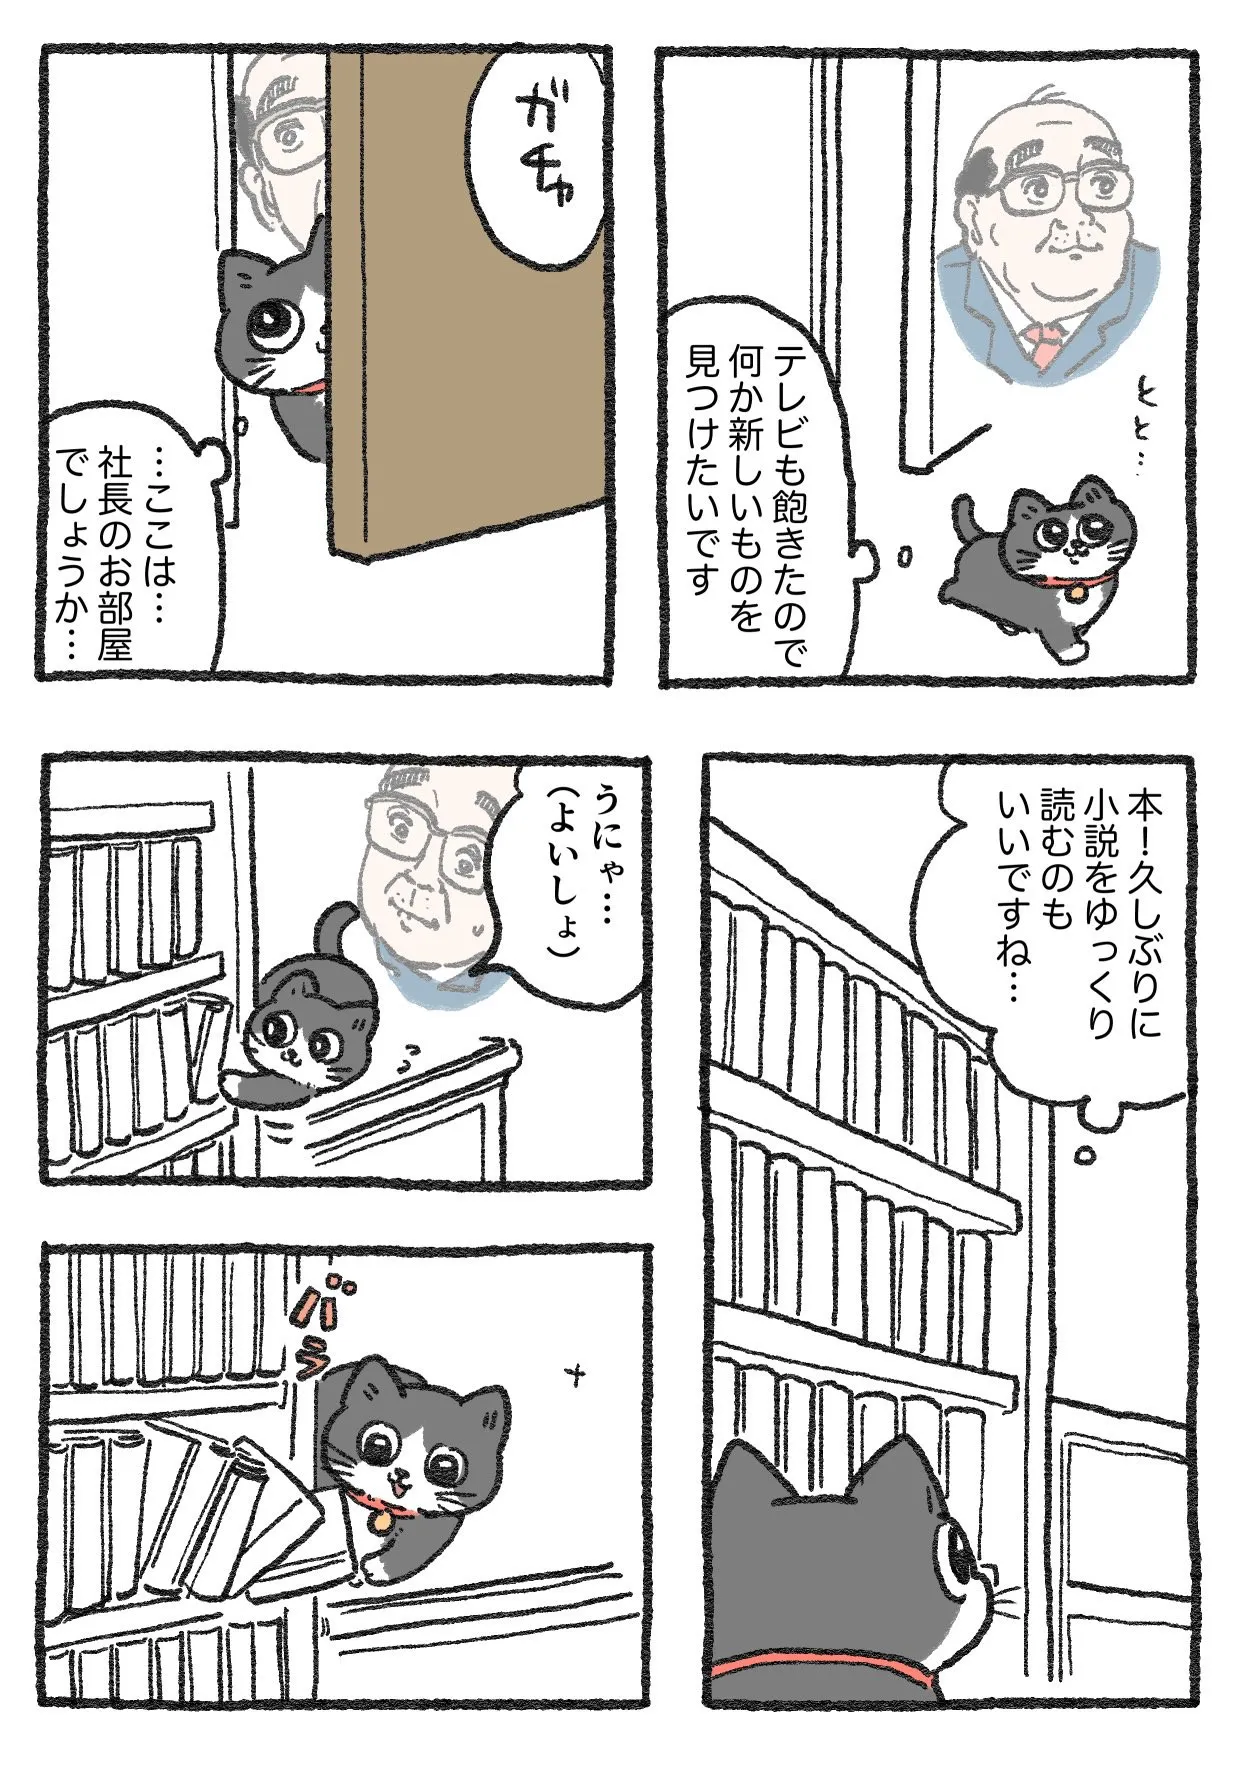 「ねこに転生したおじさん」(29/38)